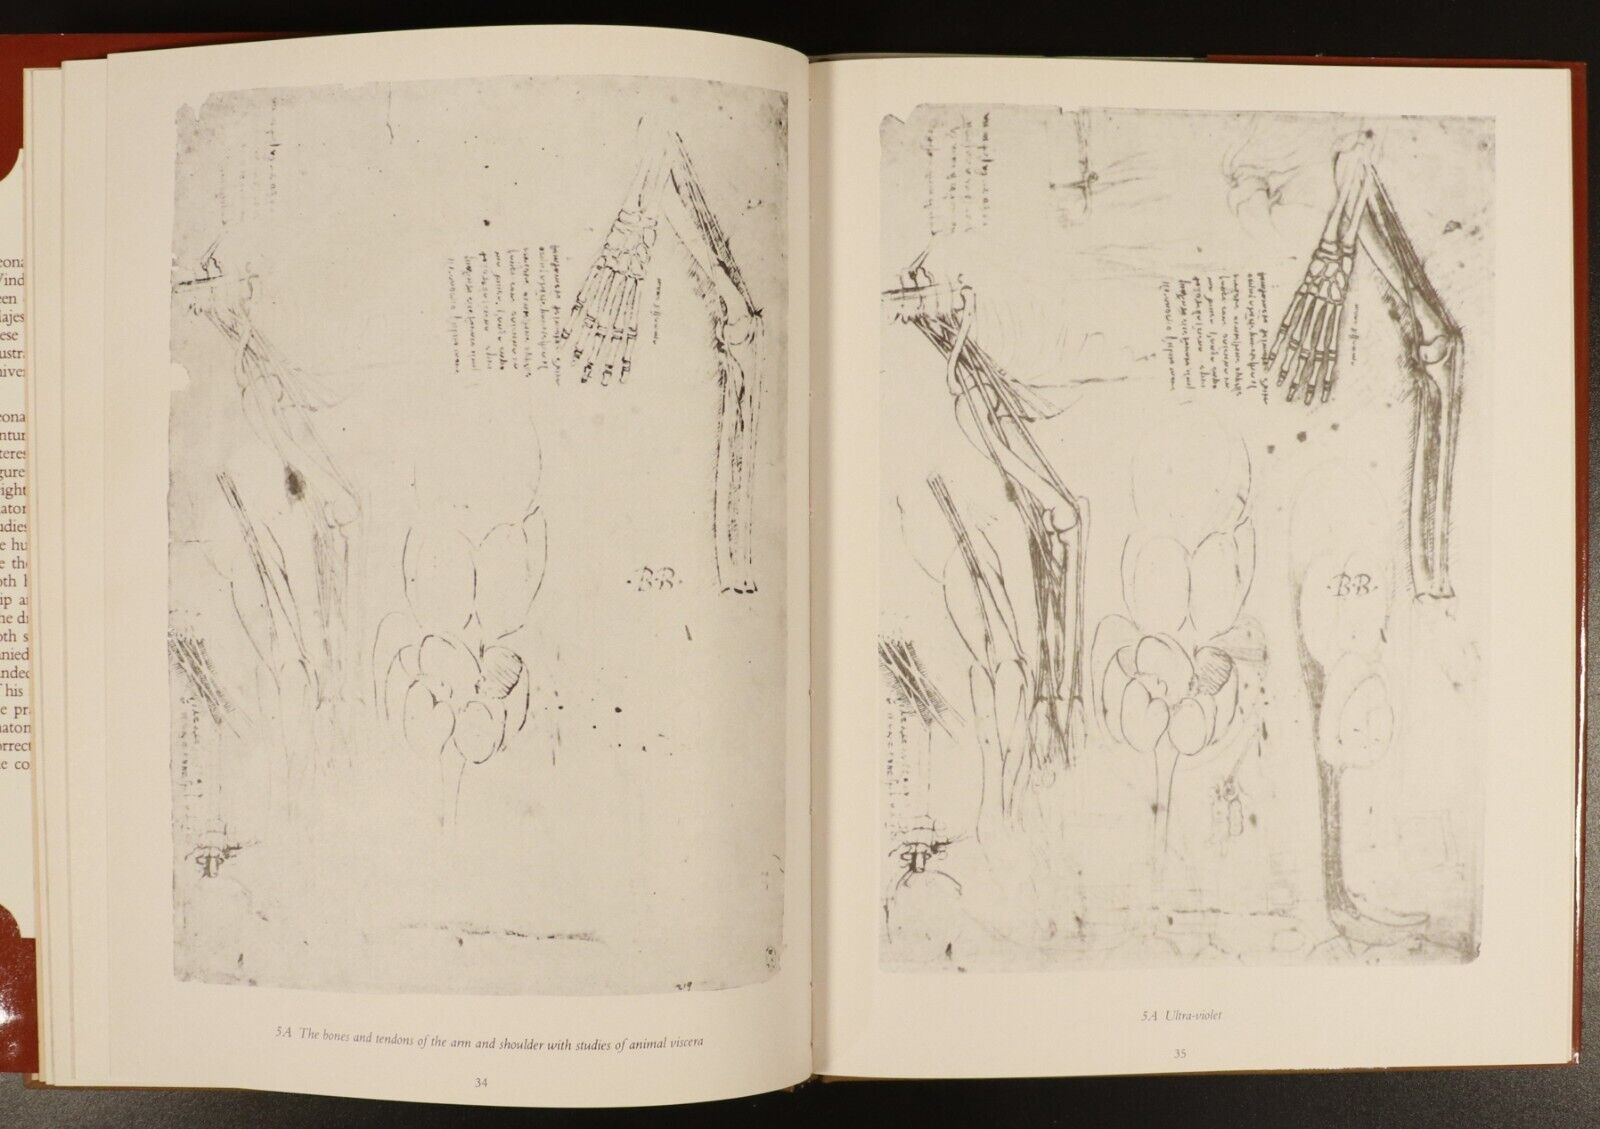 1983 Leonardo Da Vinci Anatomical DrawingsFrom Windsor Castle Art Reference Book